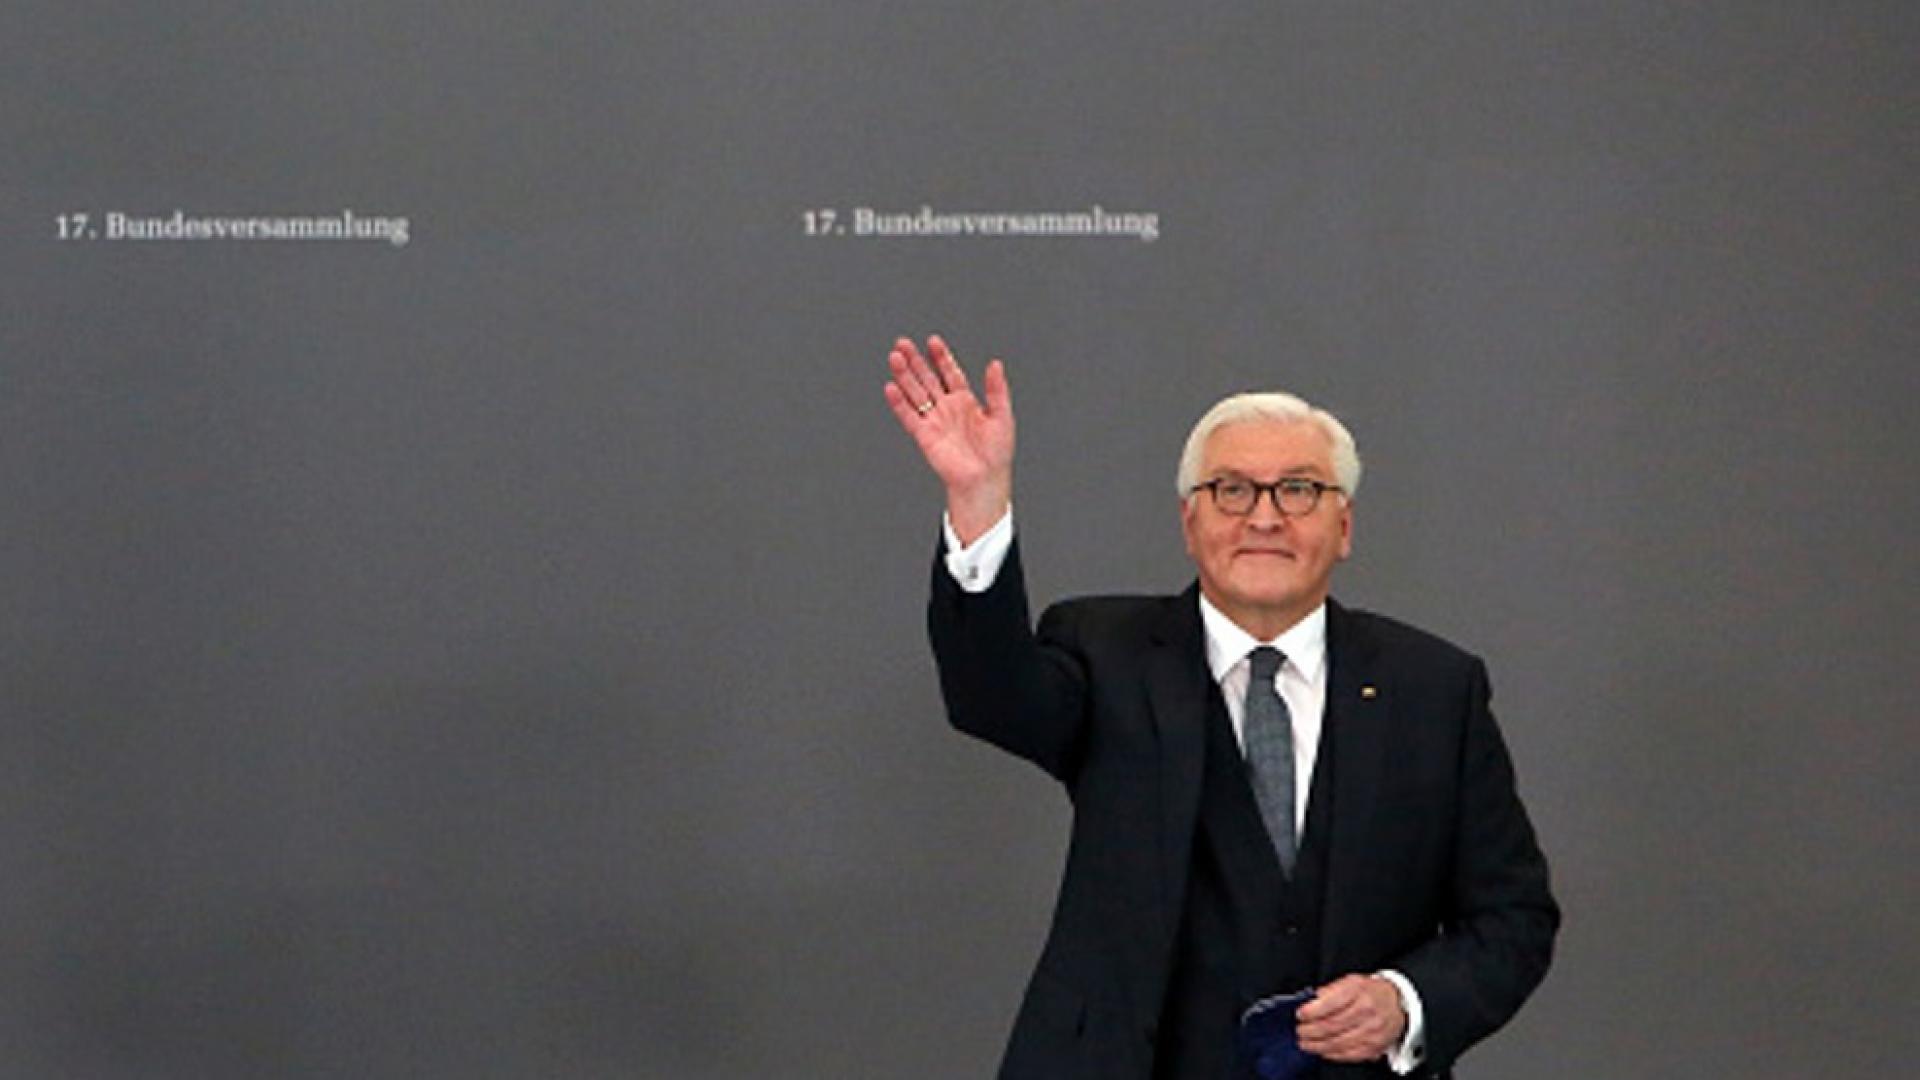 frank walter steinmeier presidente de alemania es reelegido